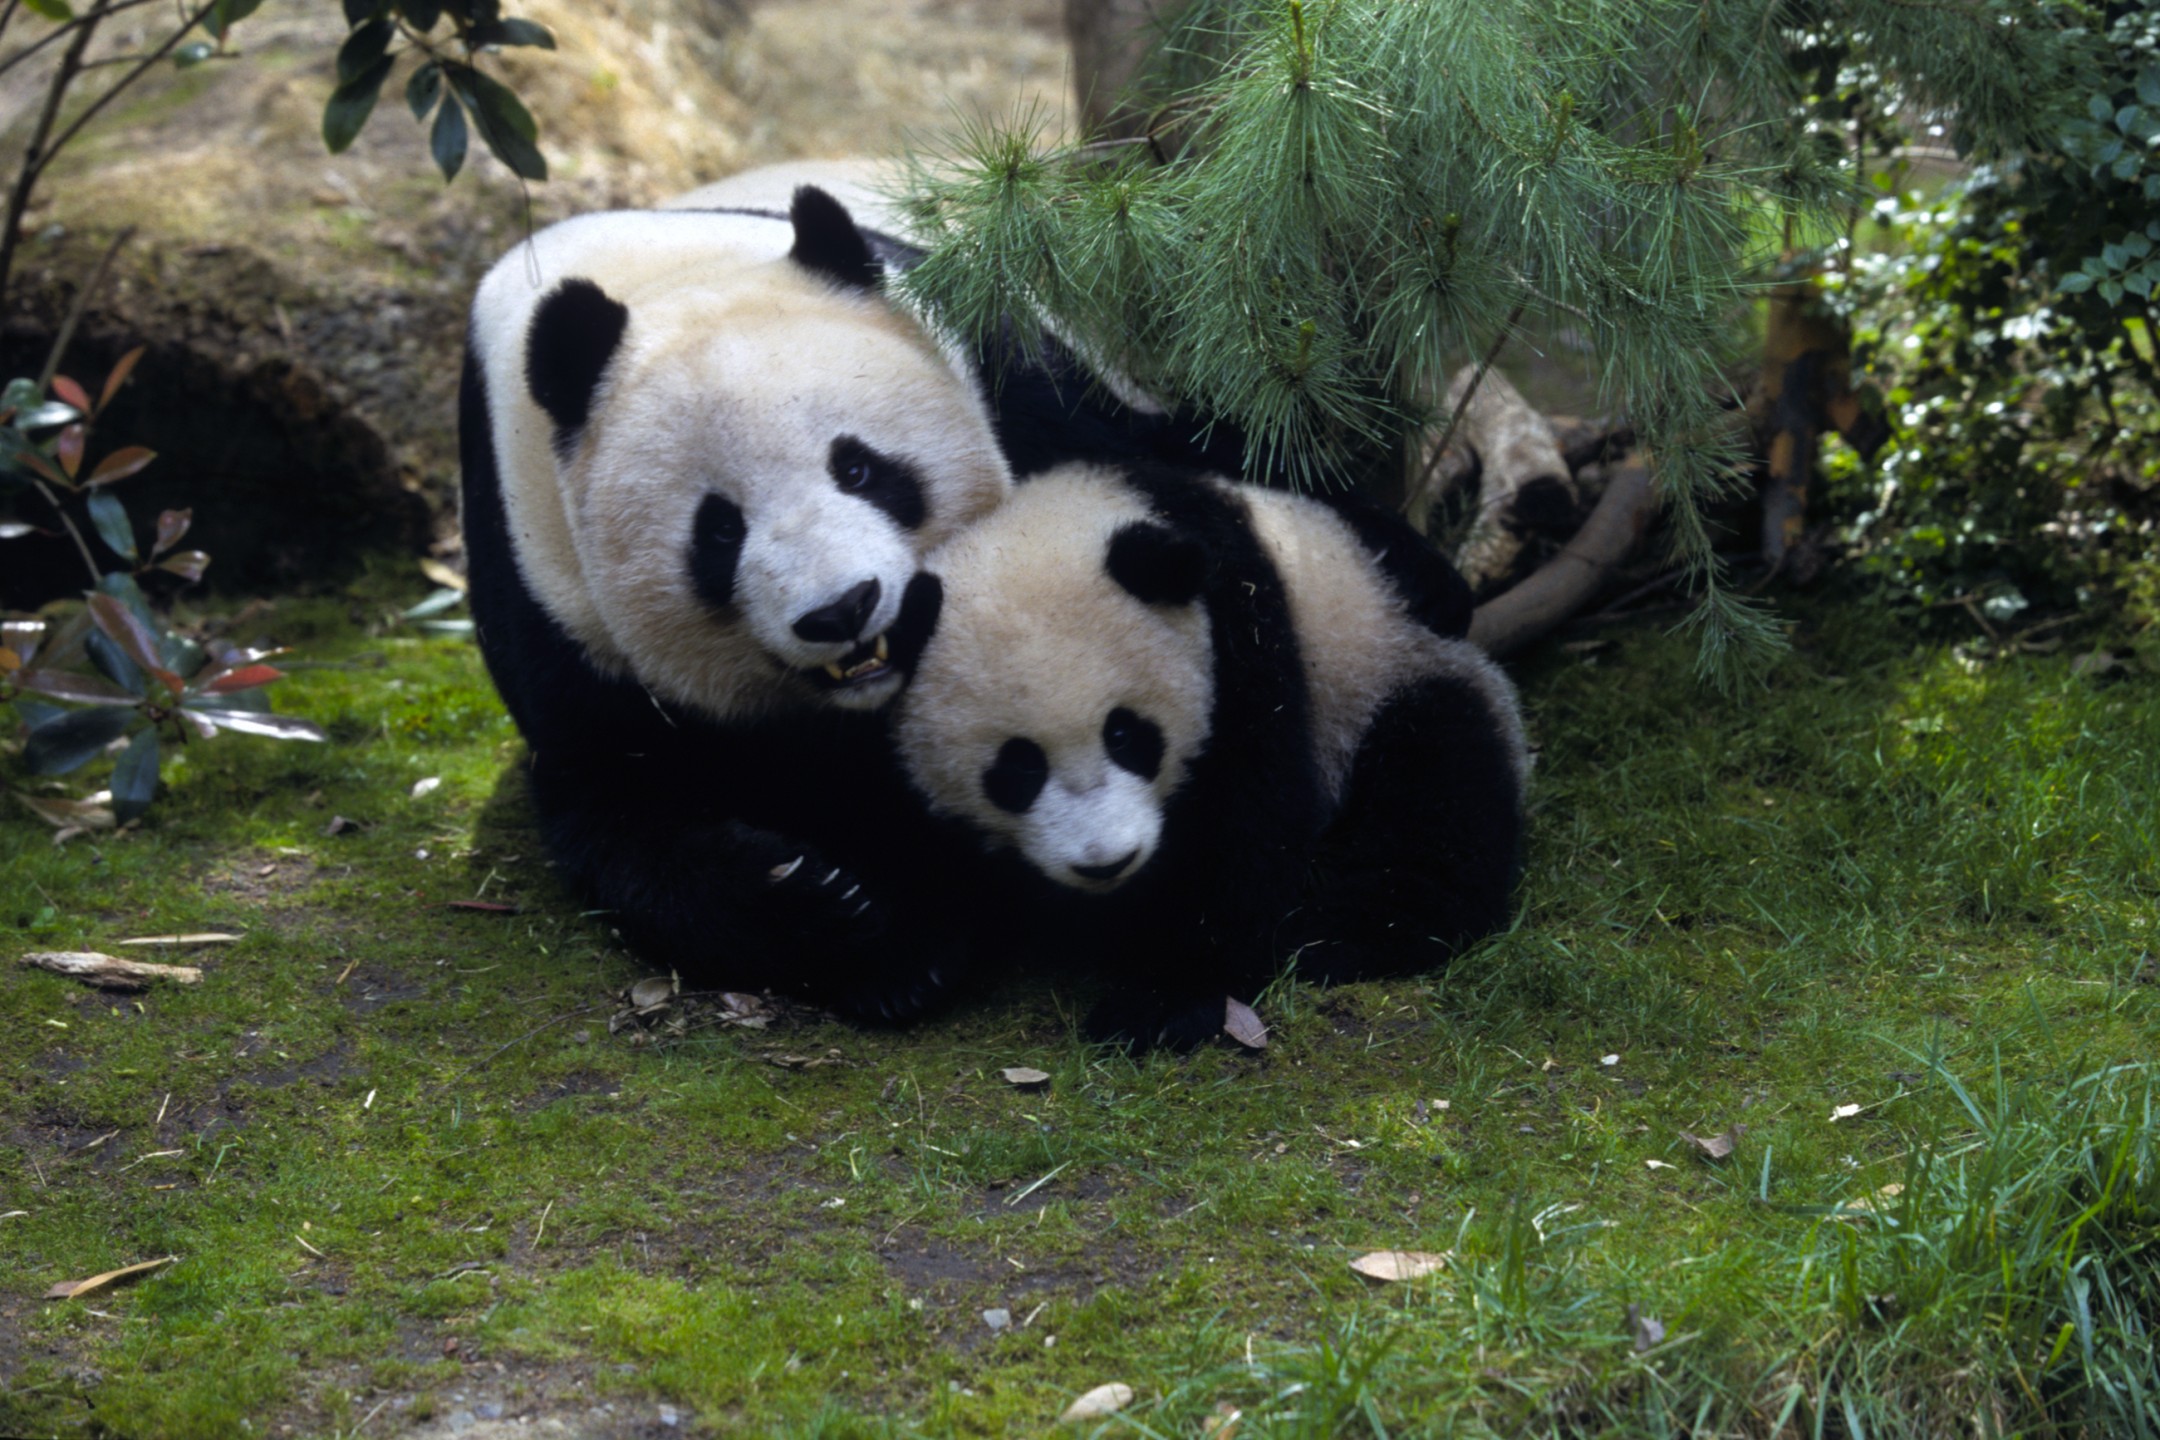 Bai Yun and Hua Mei, giant pandas